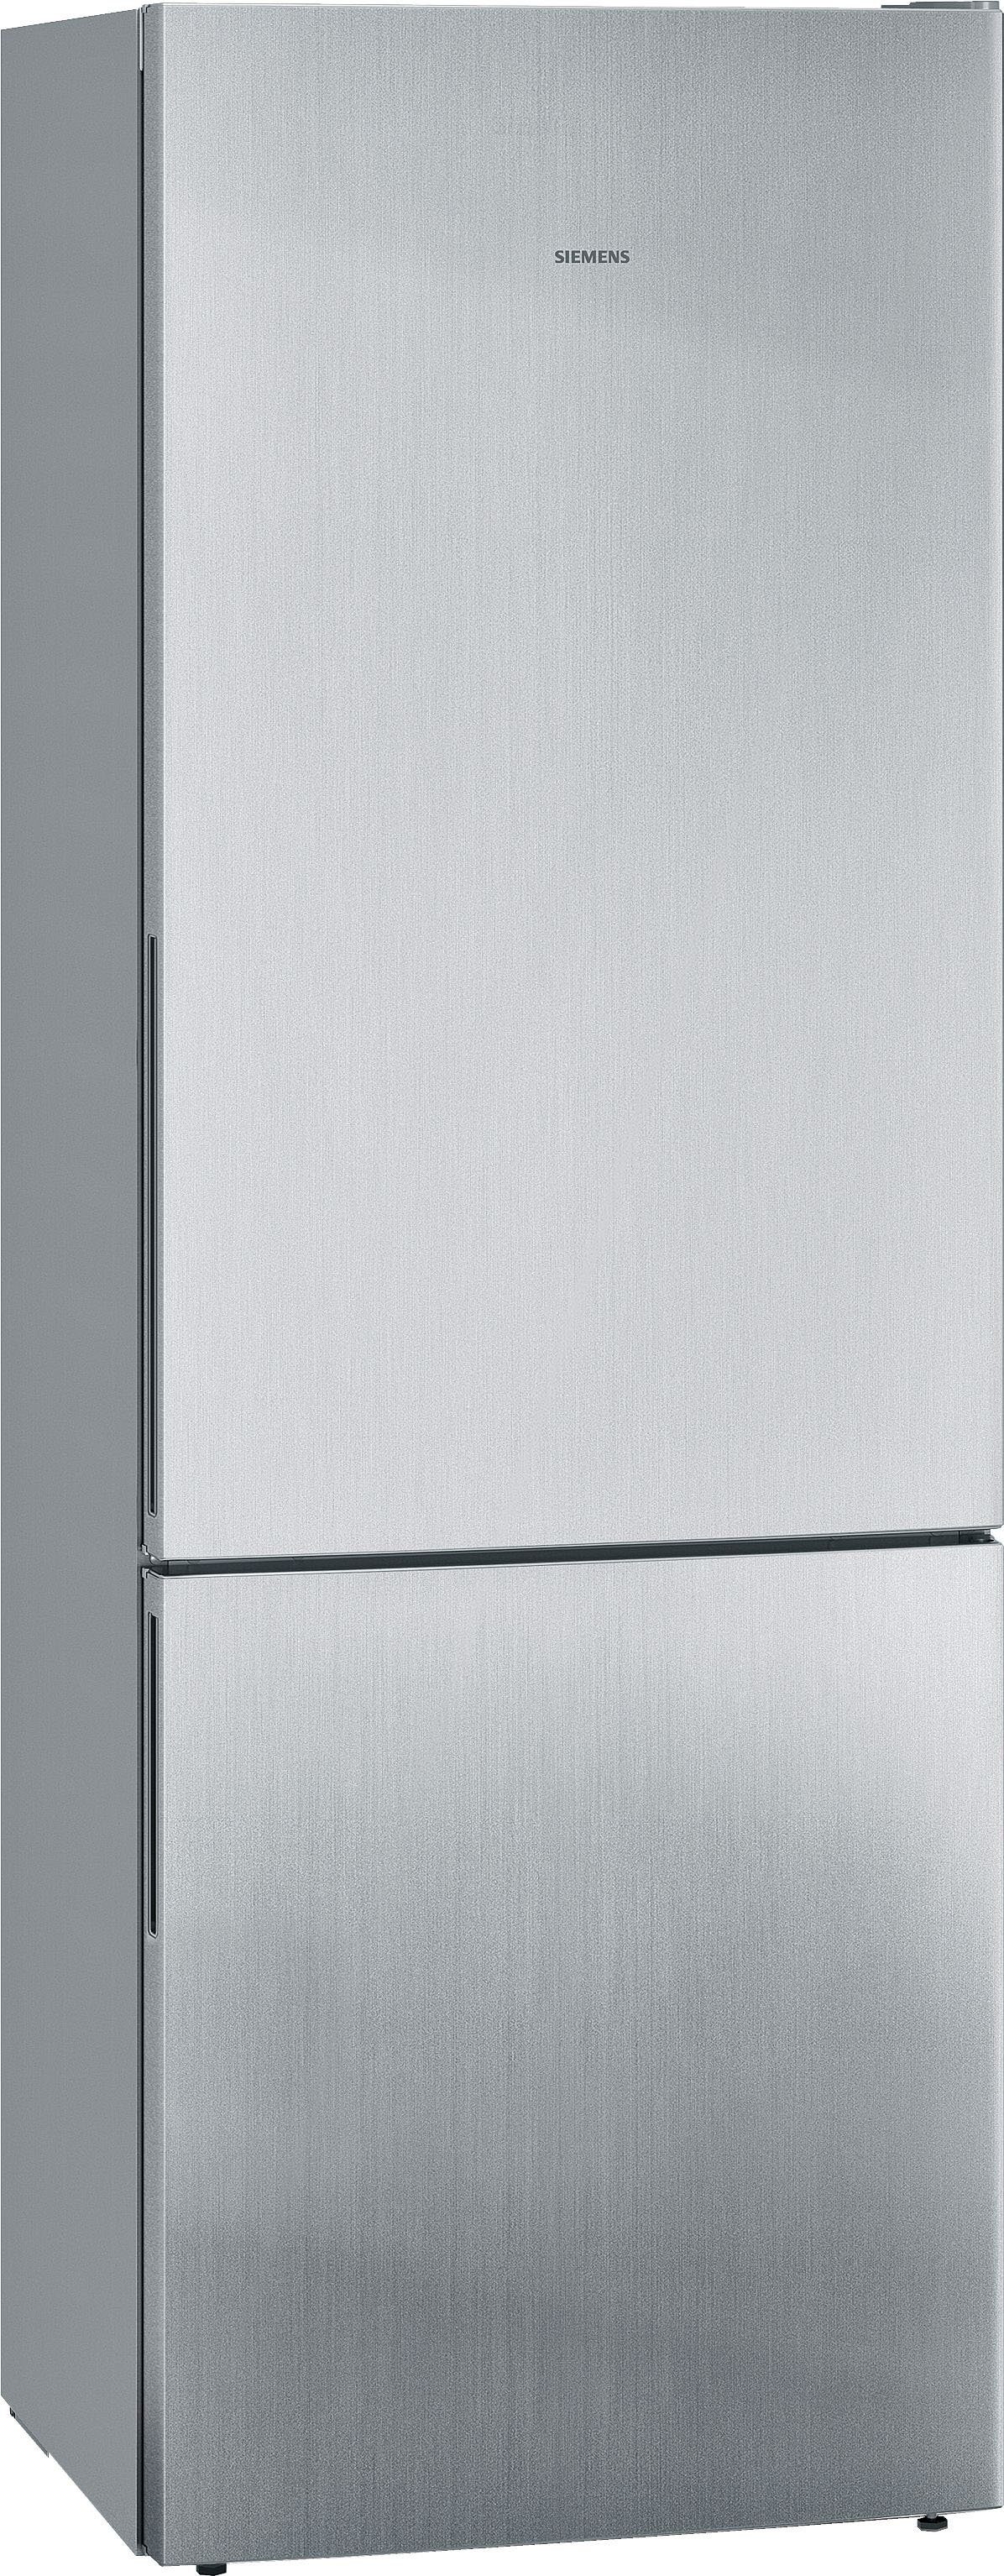 SIEMENS Kühl-/Gefrierkombination KG49EAICA, 201 cm hoch, 70 cm breit Edelstahl mit Anti-Fingerprint